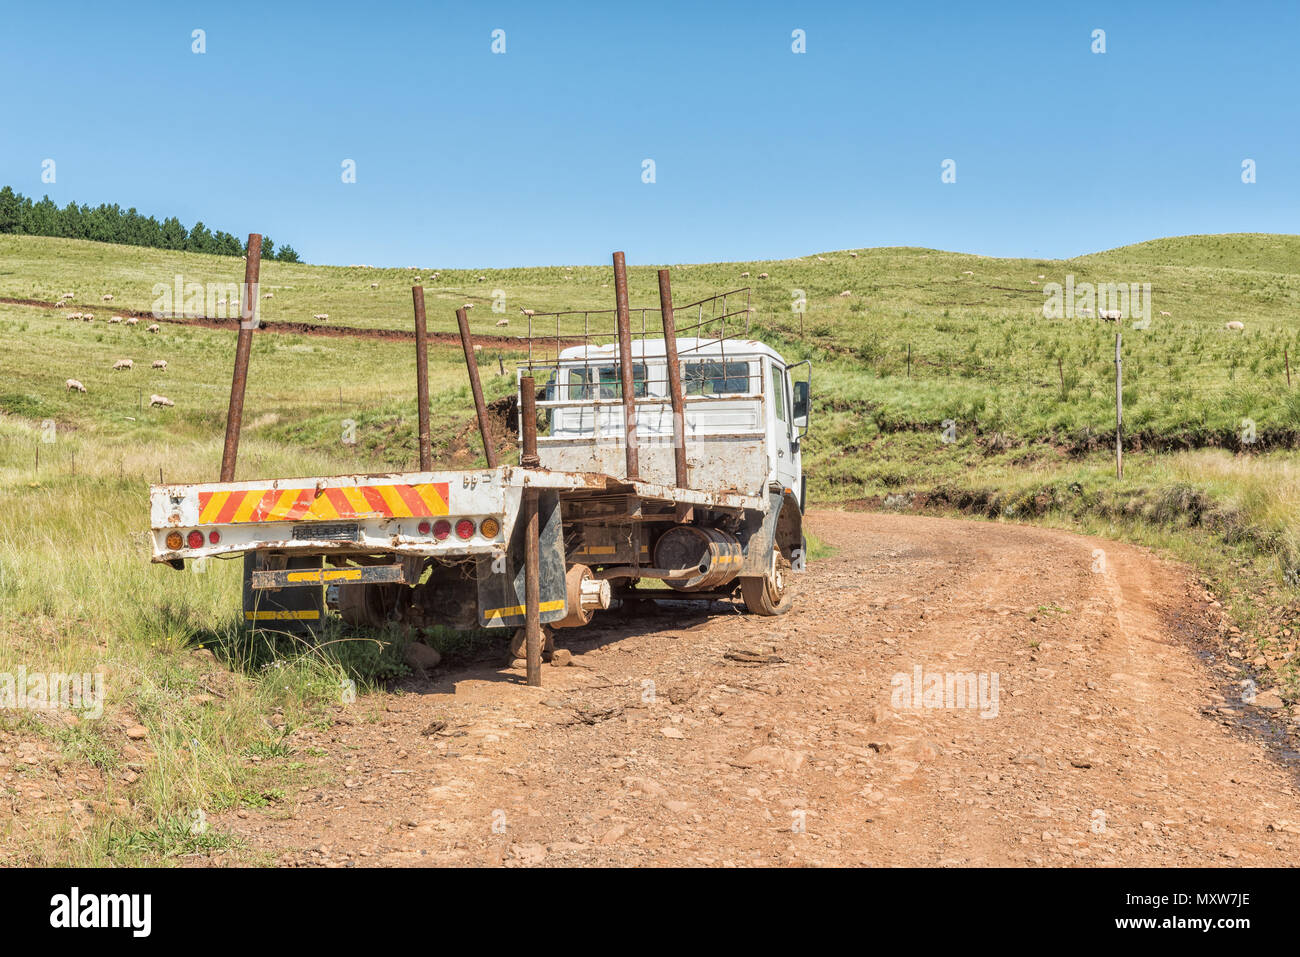 Topf RIVER PASS, SÜDAFRIKA - 27. MÄRZ 2018: Eine zerbrochen Fahrzeug am Boden des Topfes River Pass in der Nähe von Elands Höhe in der Eastern Cape Provinz Stockfoto